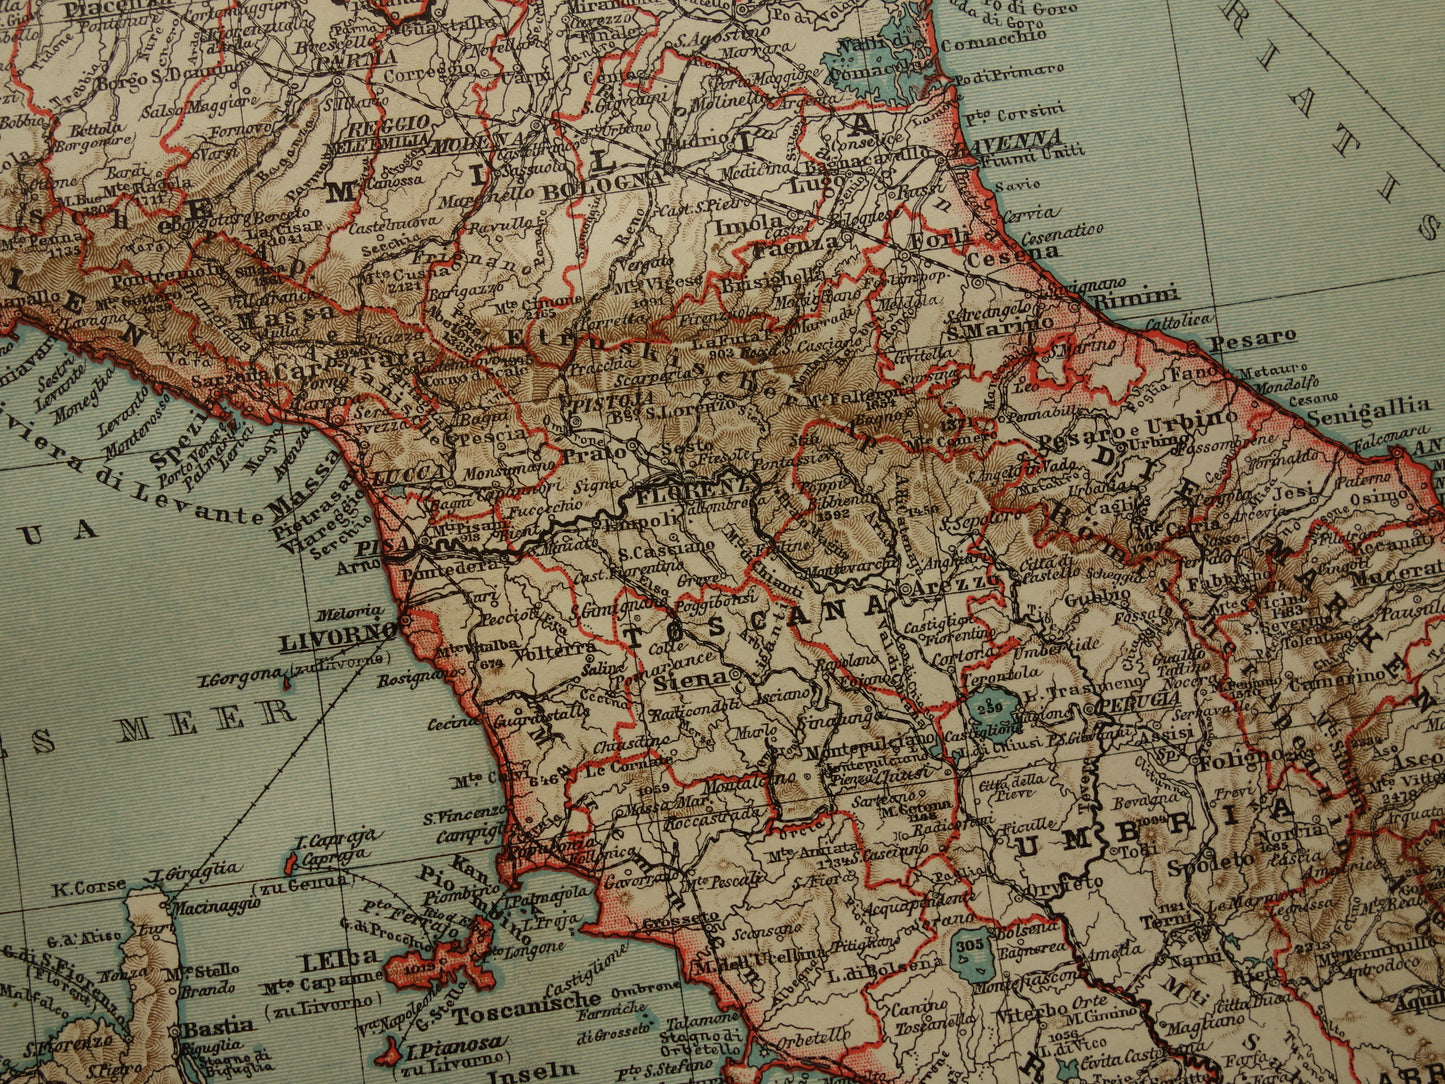 Oude kaart van Italië historische landkaart midden- en noord-Italie oude vintage kaarten met jaartal